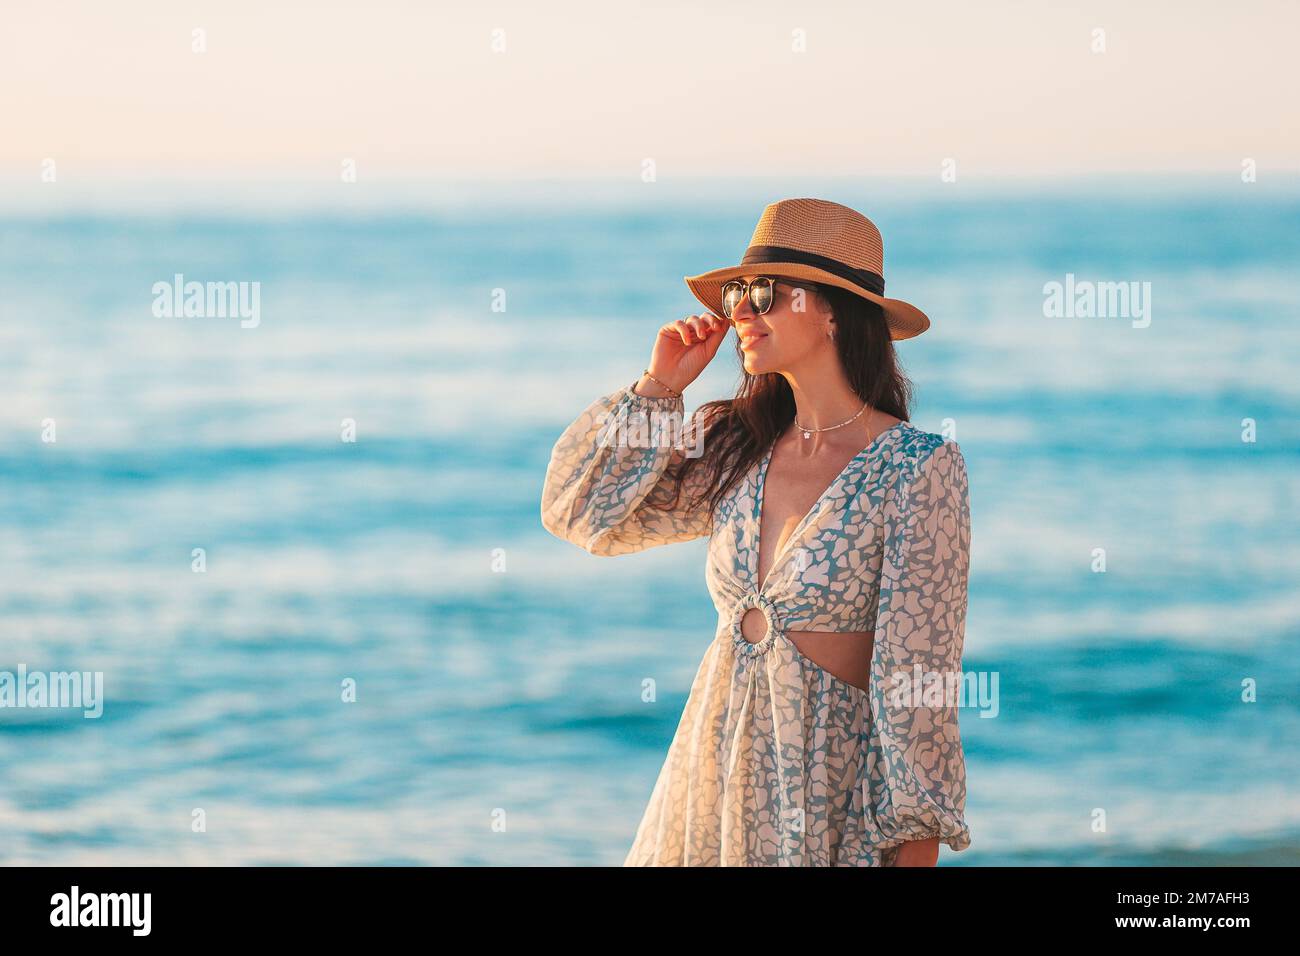 Junge glückliche Frau am Strand genießt ihren Sommerurlaub. Das Mädchen ist glücklich und ruhig in ihrem Aufenthalt am Strand Stockfoto